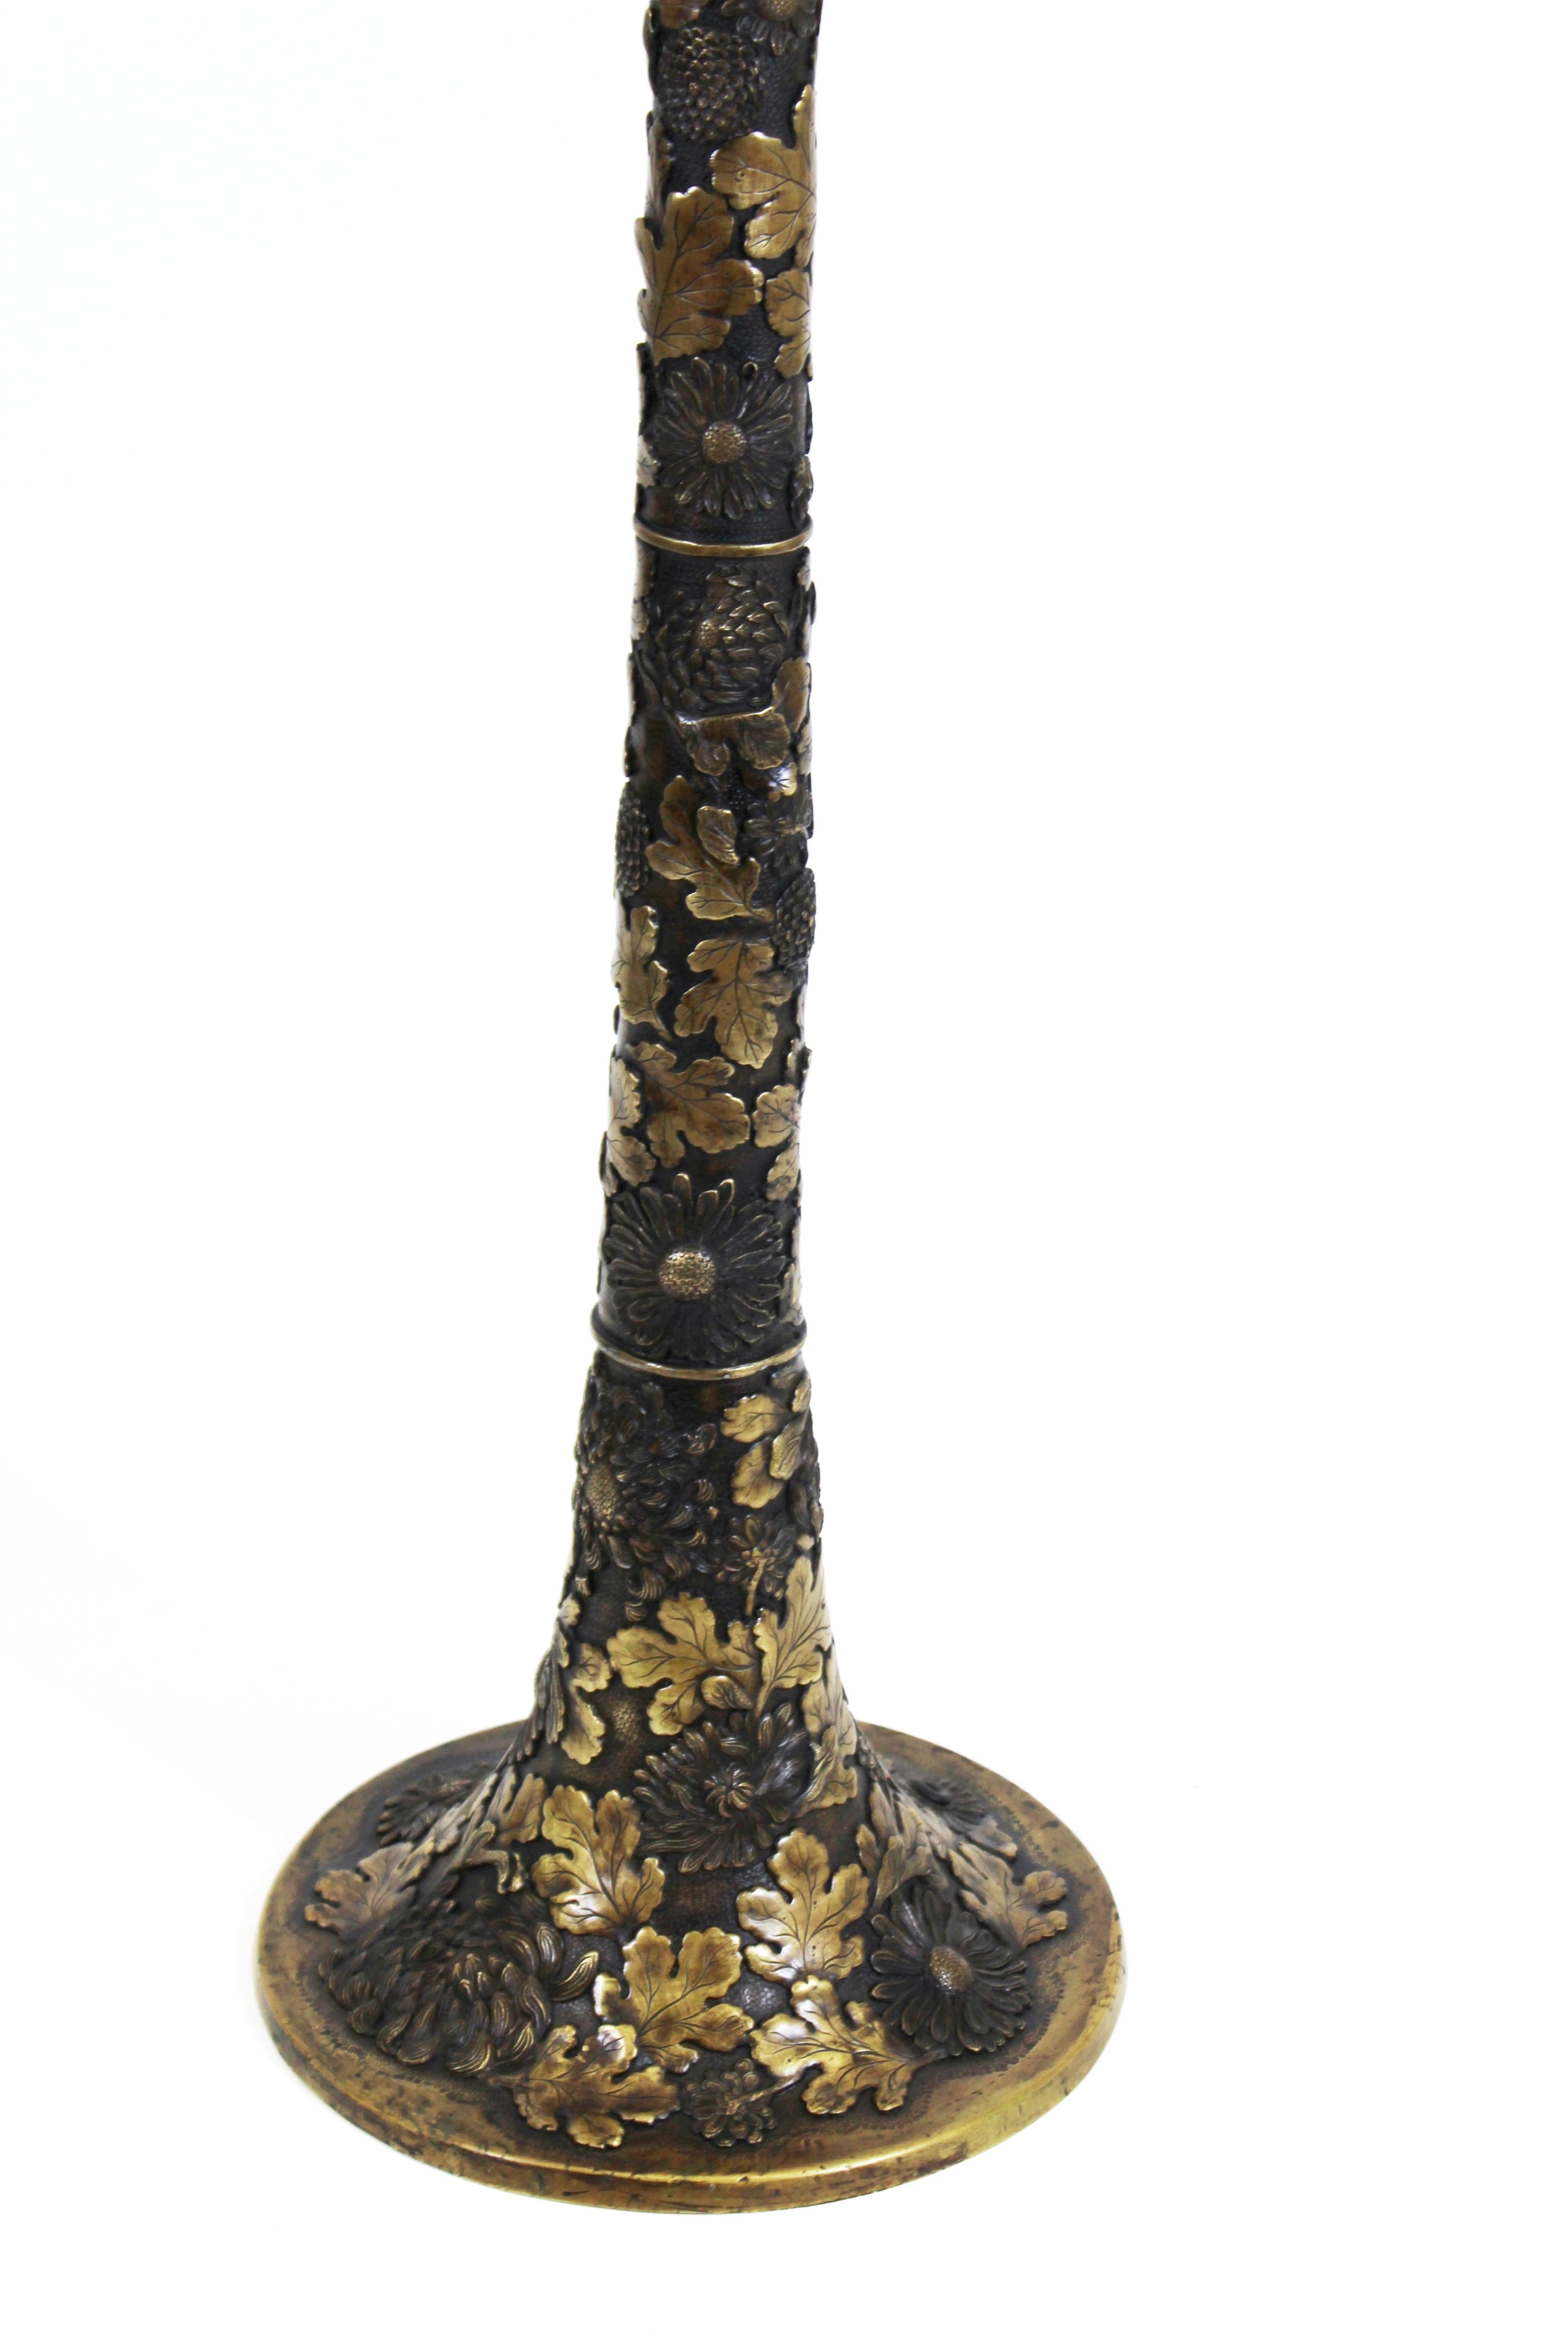 Japanische Jugendstil-Tischlampe aus Taisho-Bronze mit kompliziertem Blumenmuster aus Chrysanthemen und Eichenblättern. Die Chrysantheme ist eines der wichtigsten Symbole der japanischen Kultur und repräsentiert das Land sowie das kaiserliche Siegel